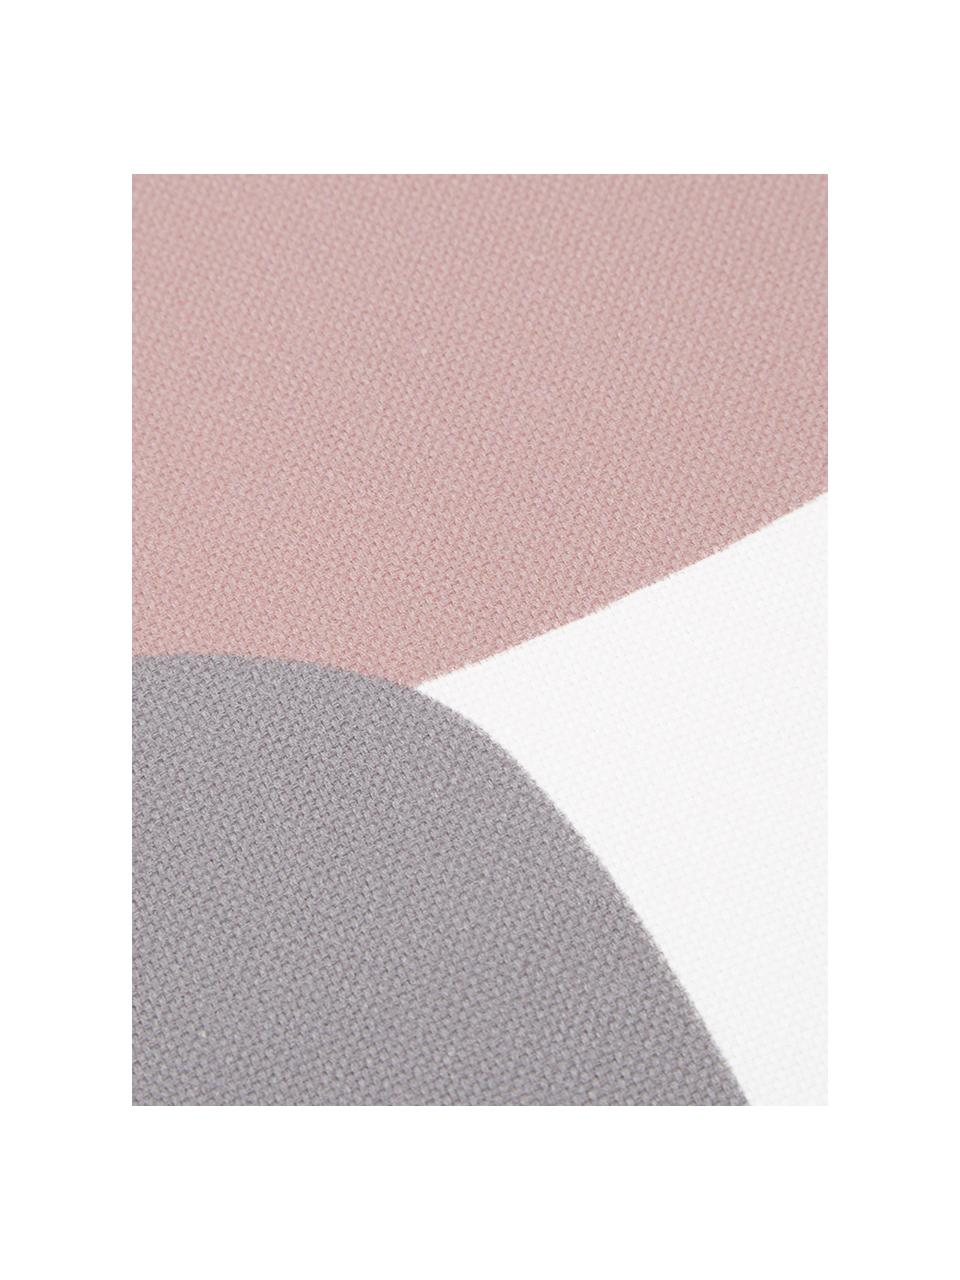 Federa arredo con forme geometriche Line, Tessuto: Panama, Bianco, grigio, rosa, rosso scuro, arancione, blu scuro, Larg. 40 x Lung. 40 cm